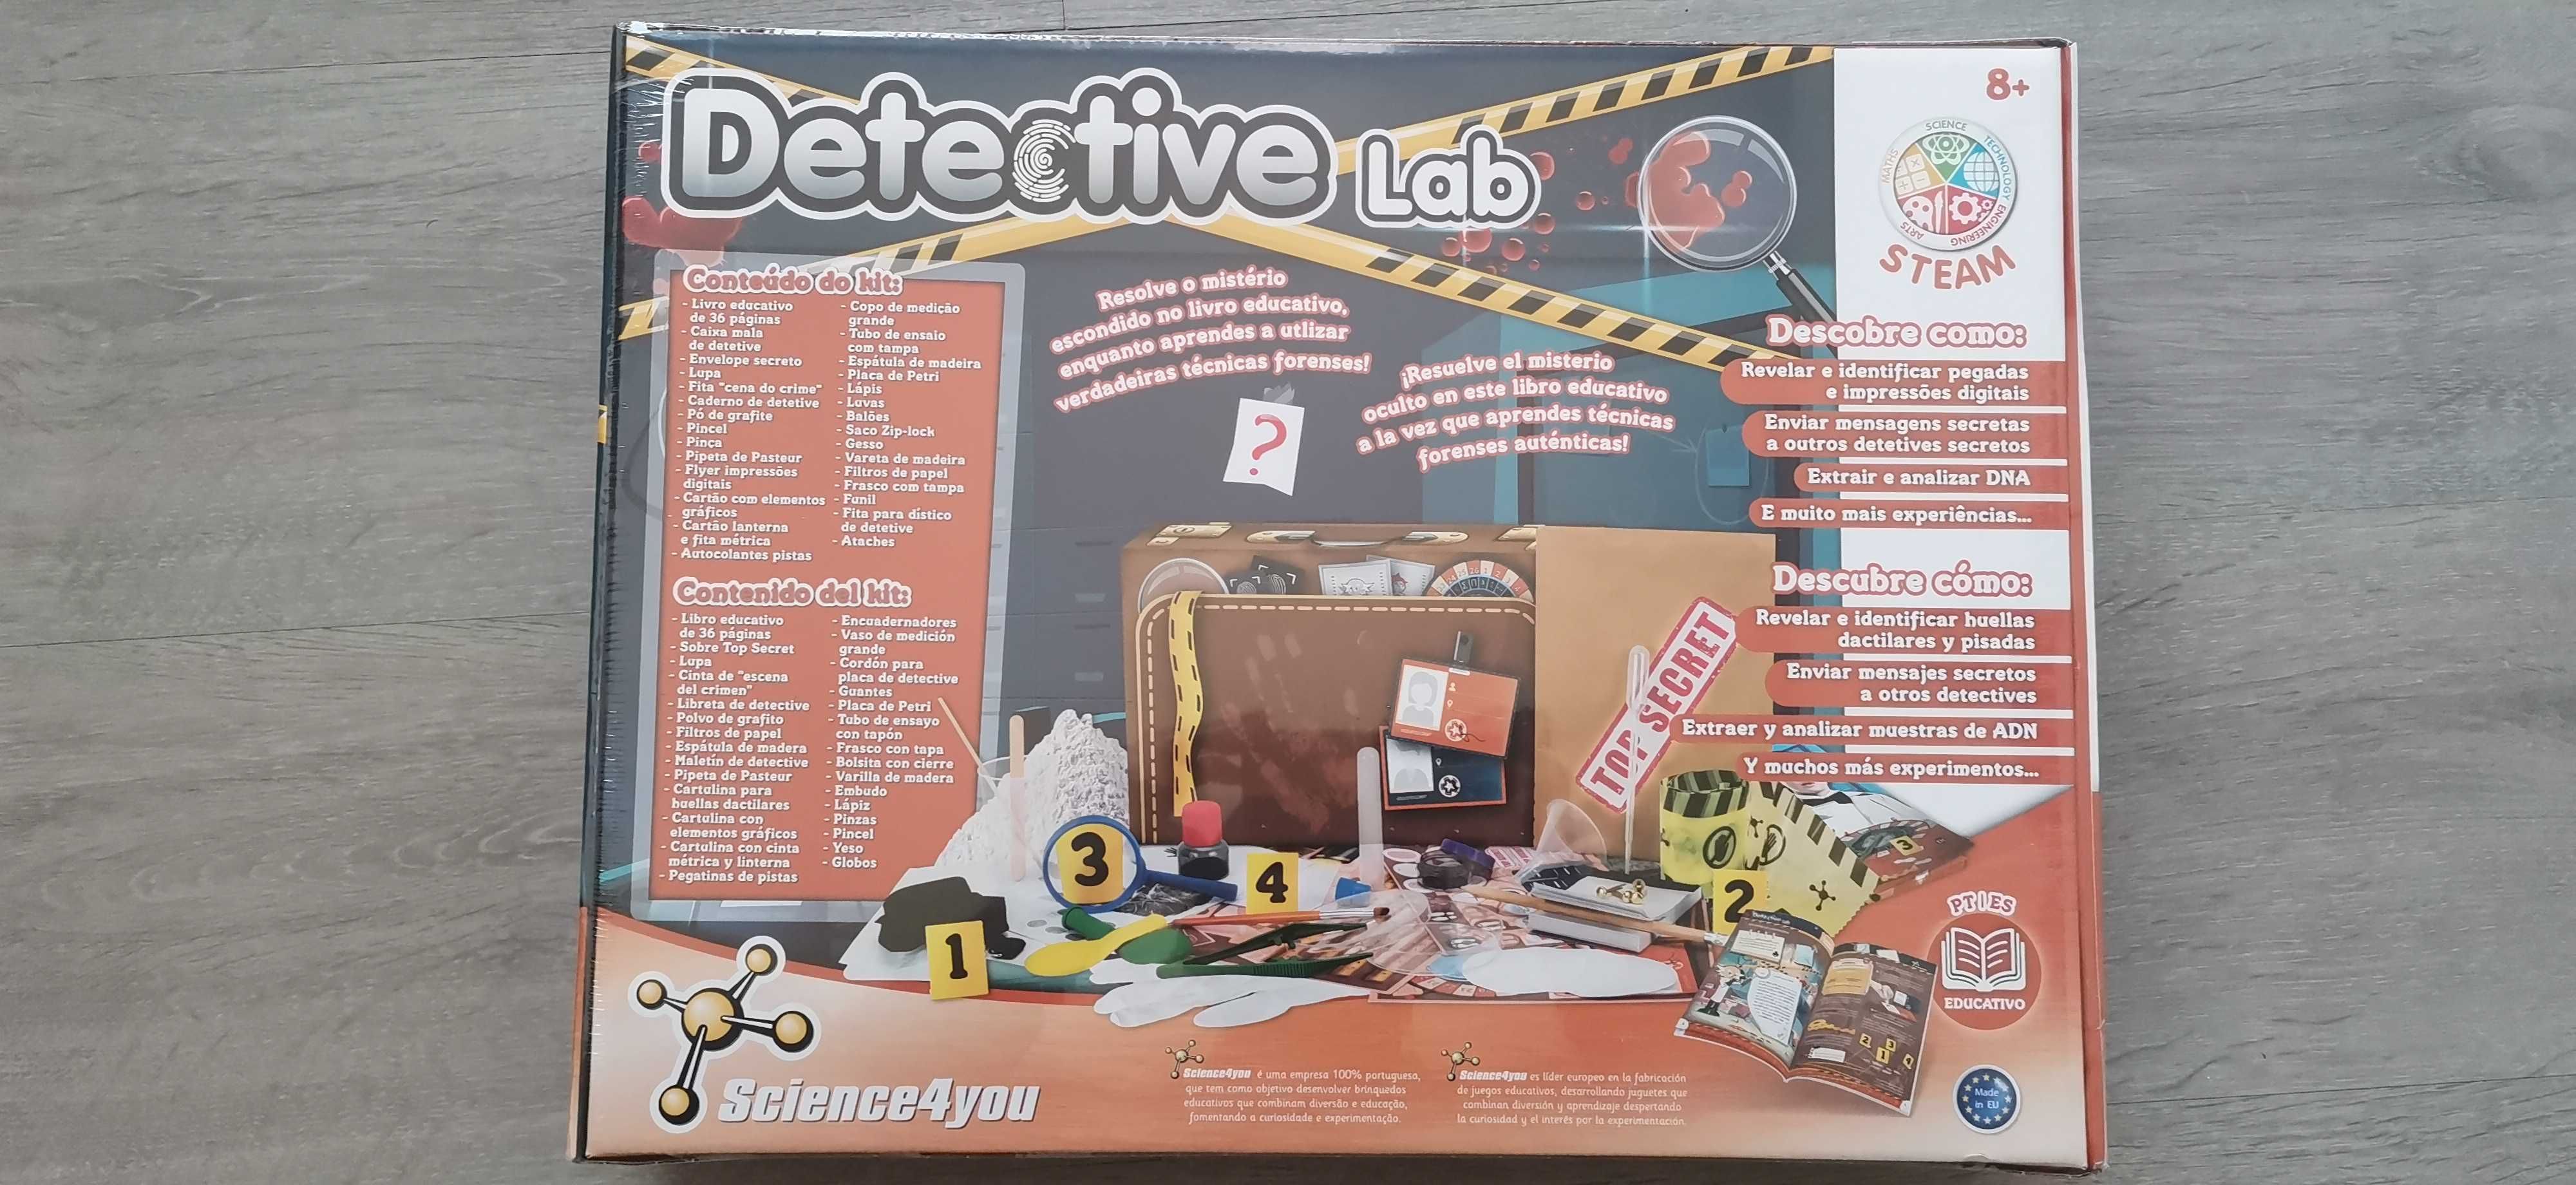 Jogo "Detective Lab" science4You novo selado.